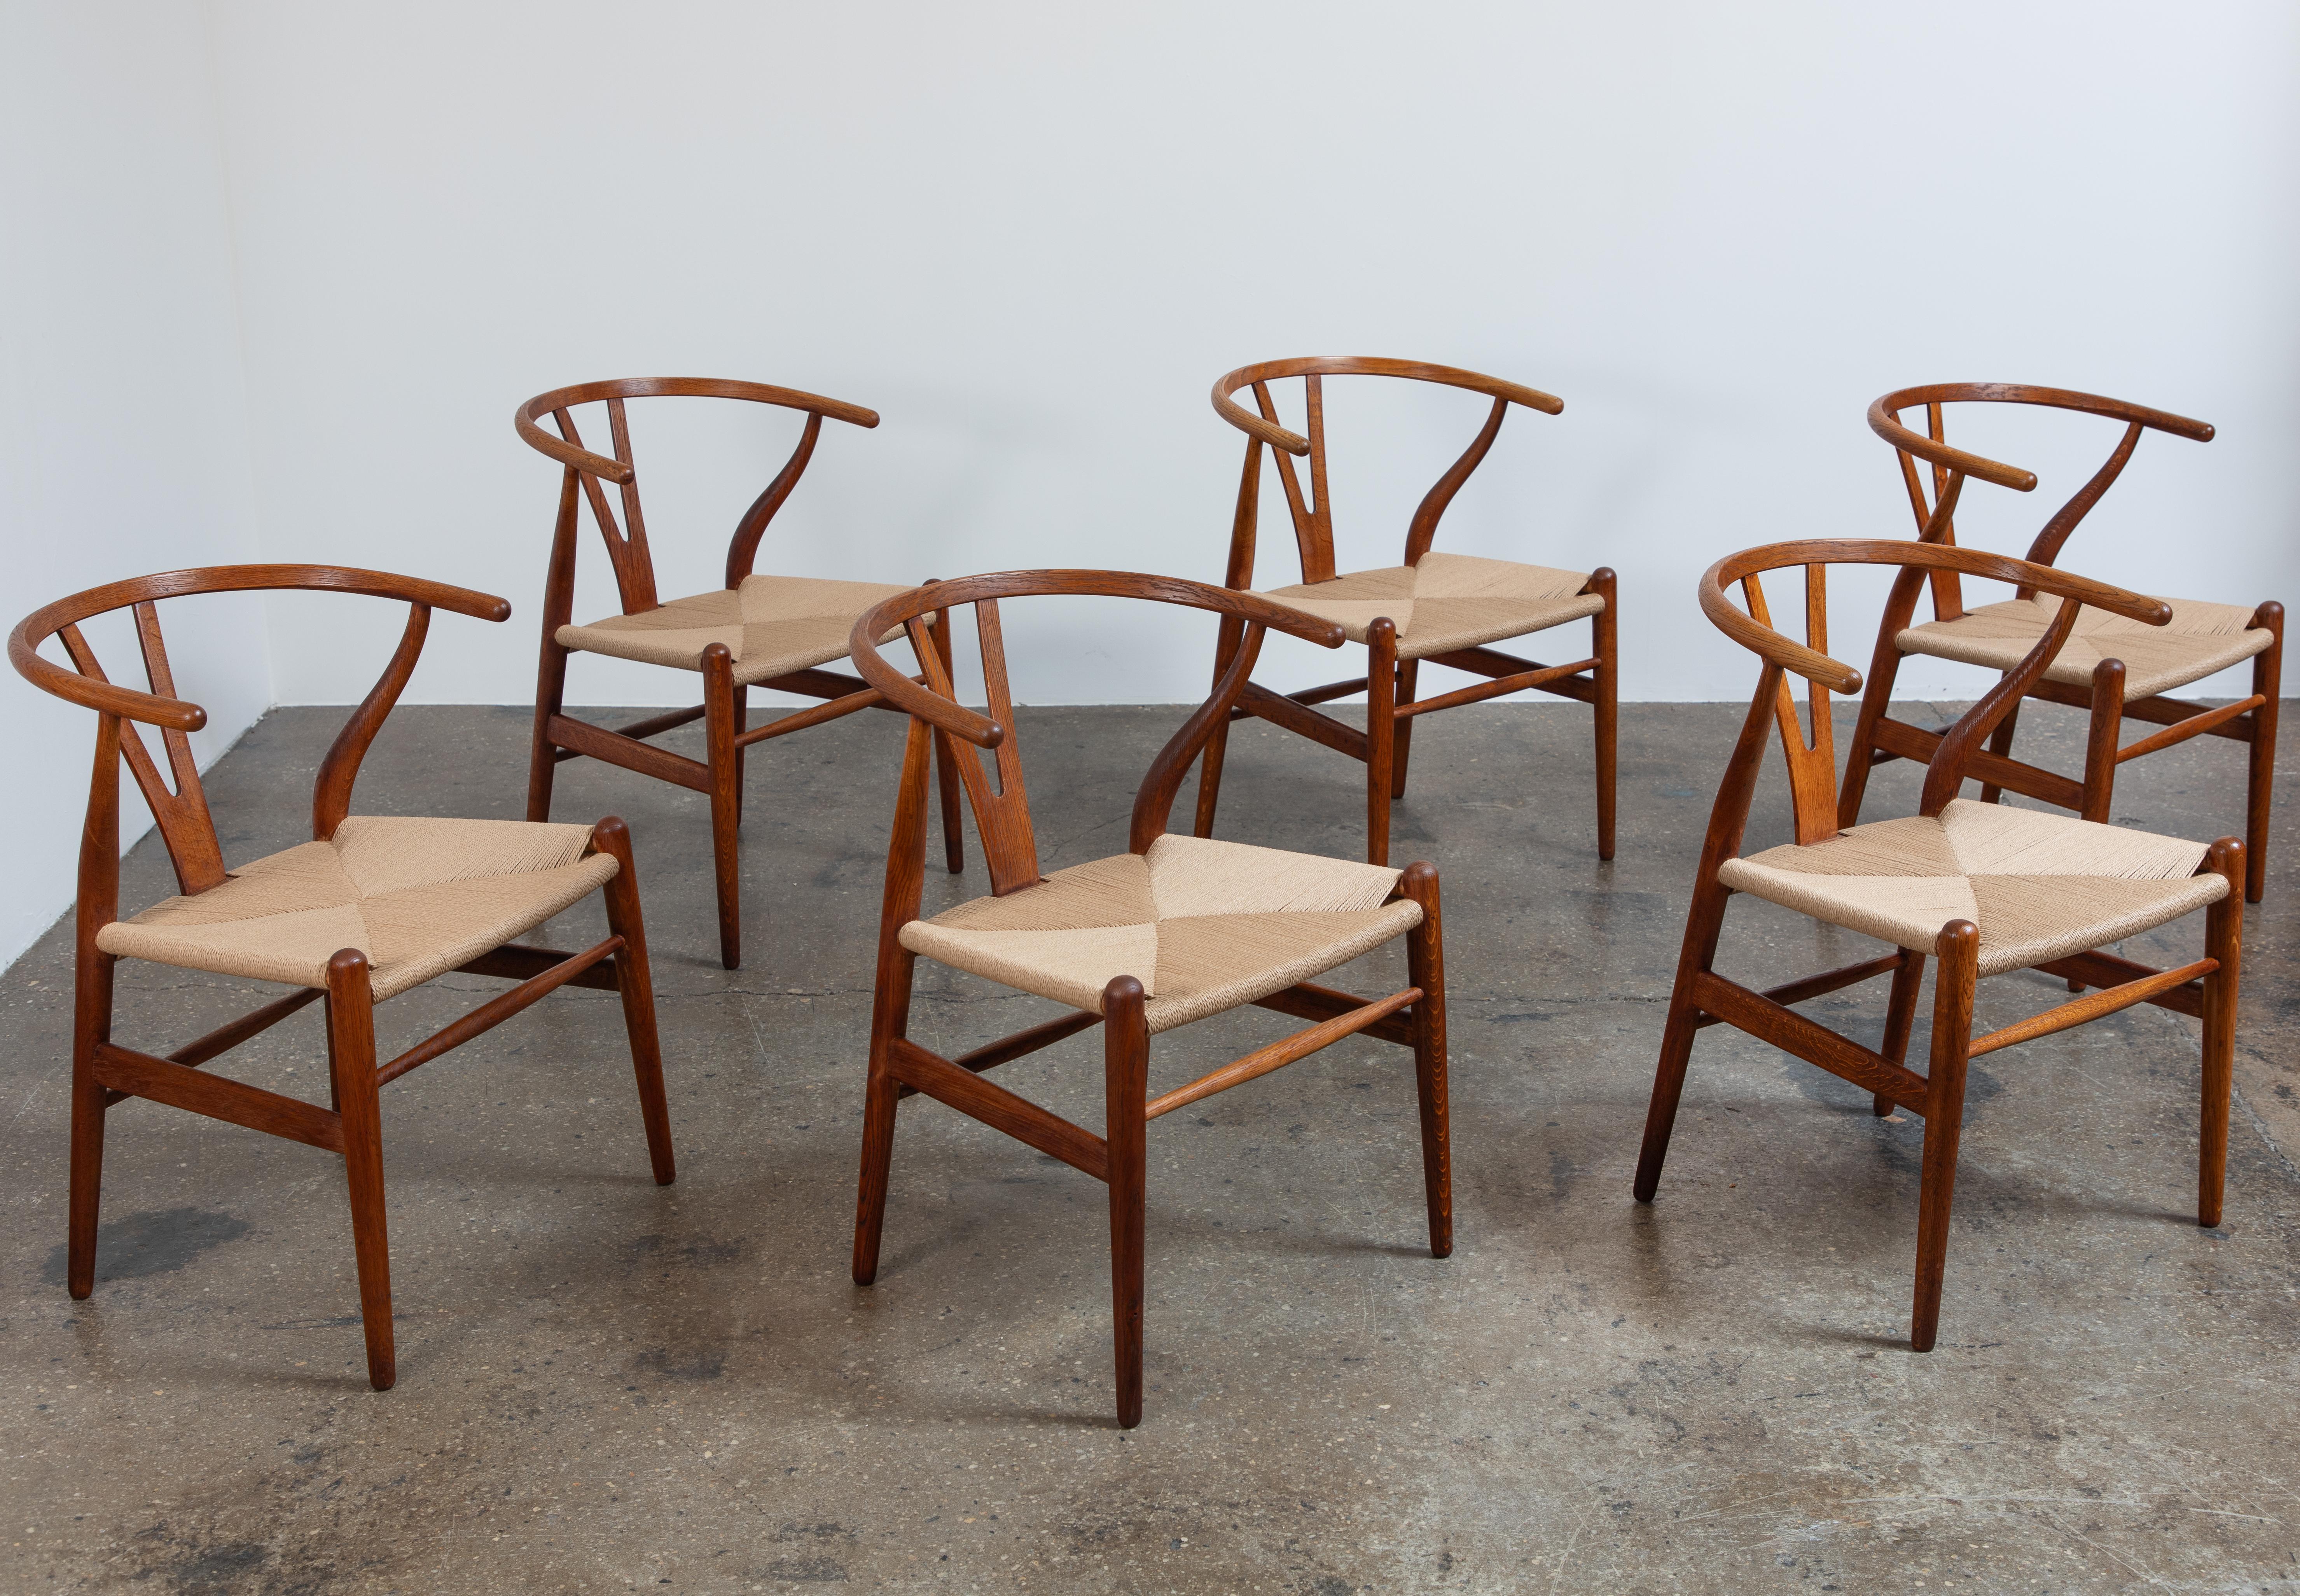 Ensemble de six chaises de salle à manger modèle CH-24, conçues par Hans J. Wegner pour Carl Hansen & Son. Ces chaises de salle à manger emblématiques allient élégance chevronnée et artisanat raffiné.  La robuste structure en bois de chêne a bien